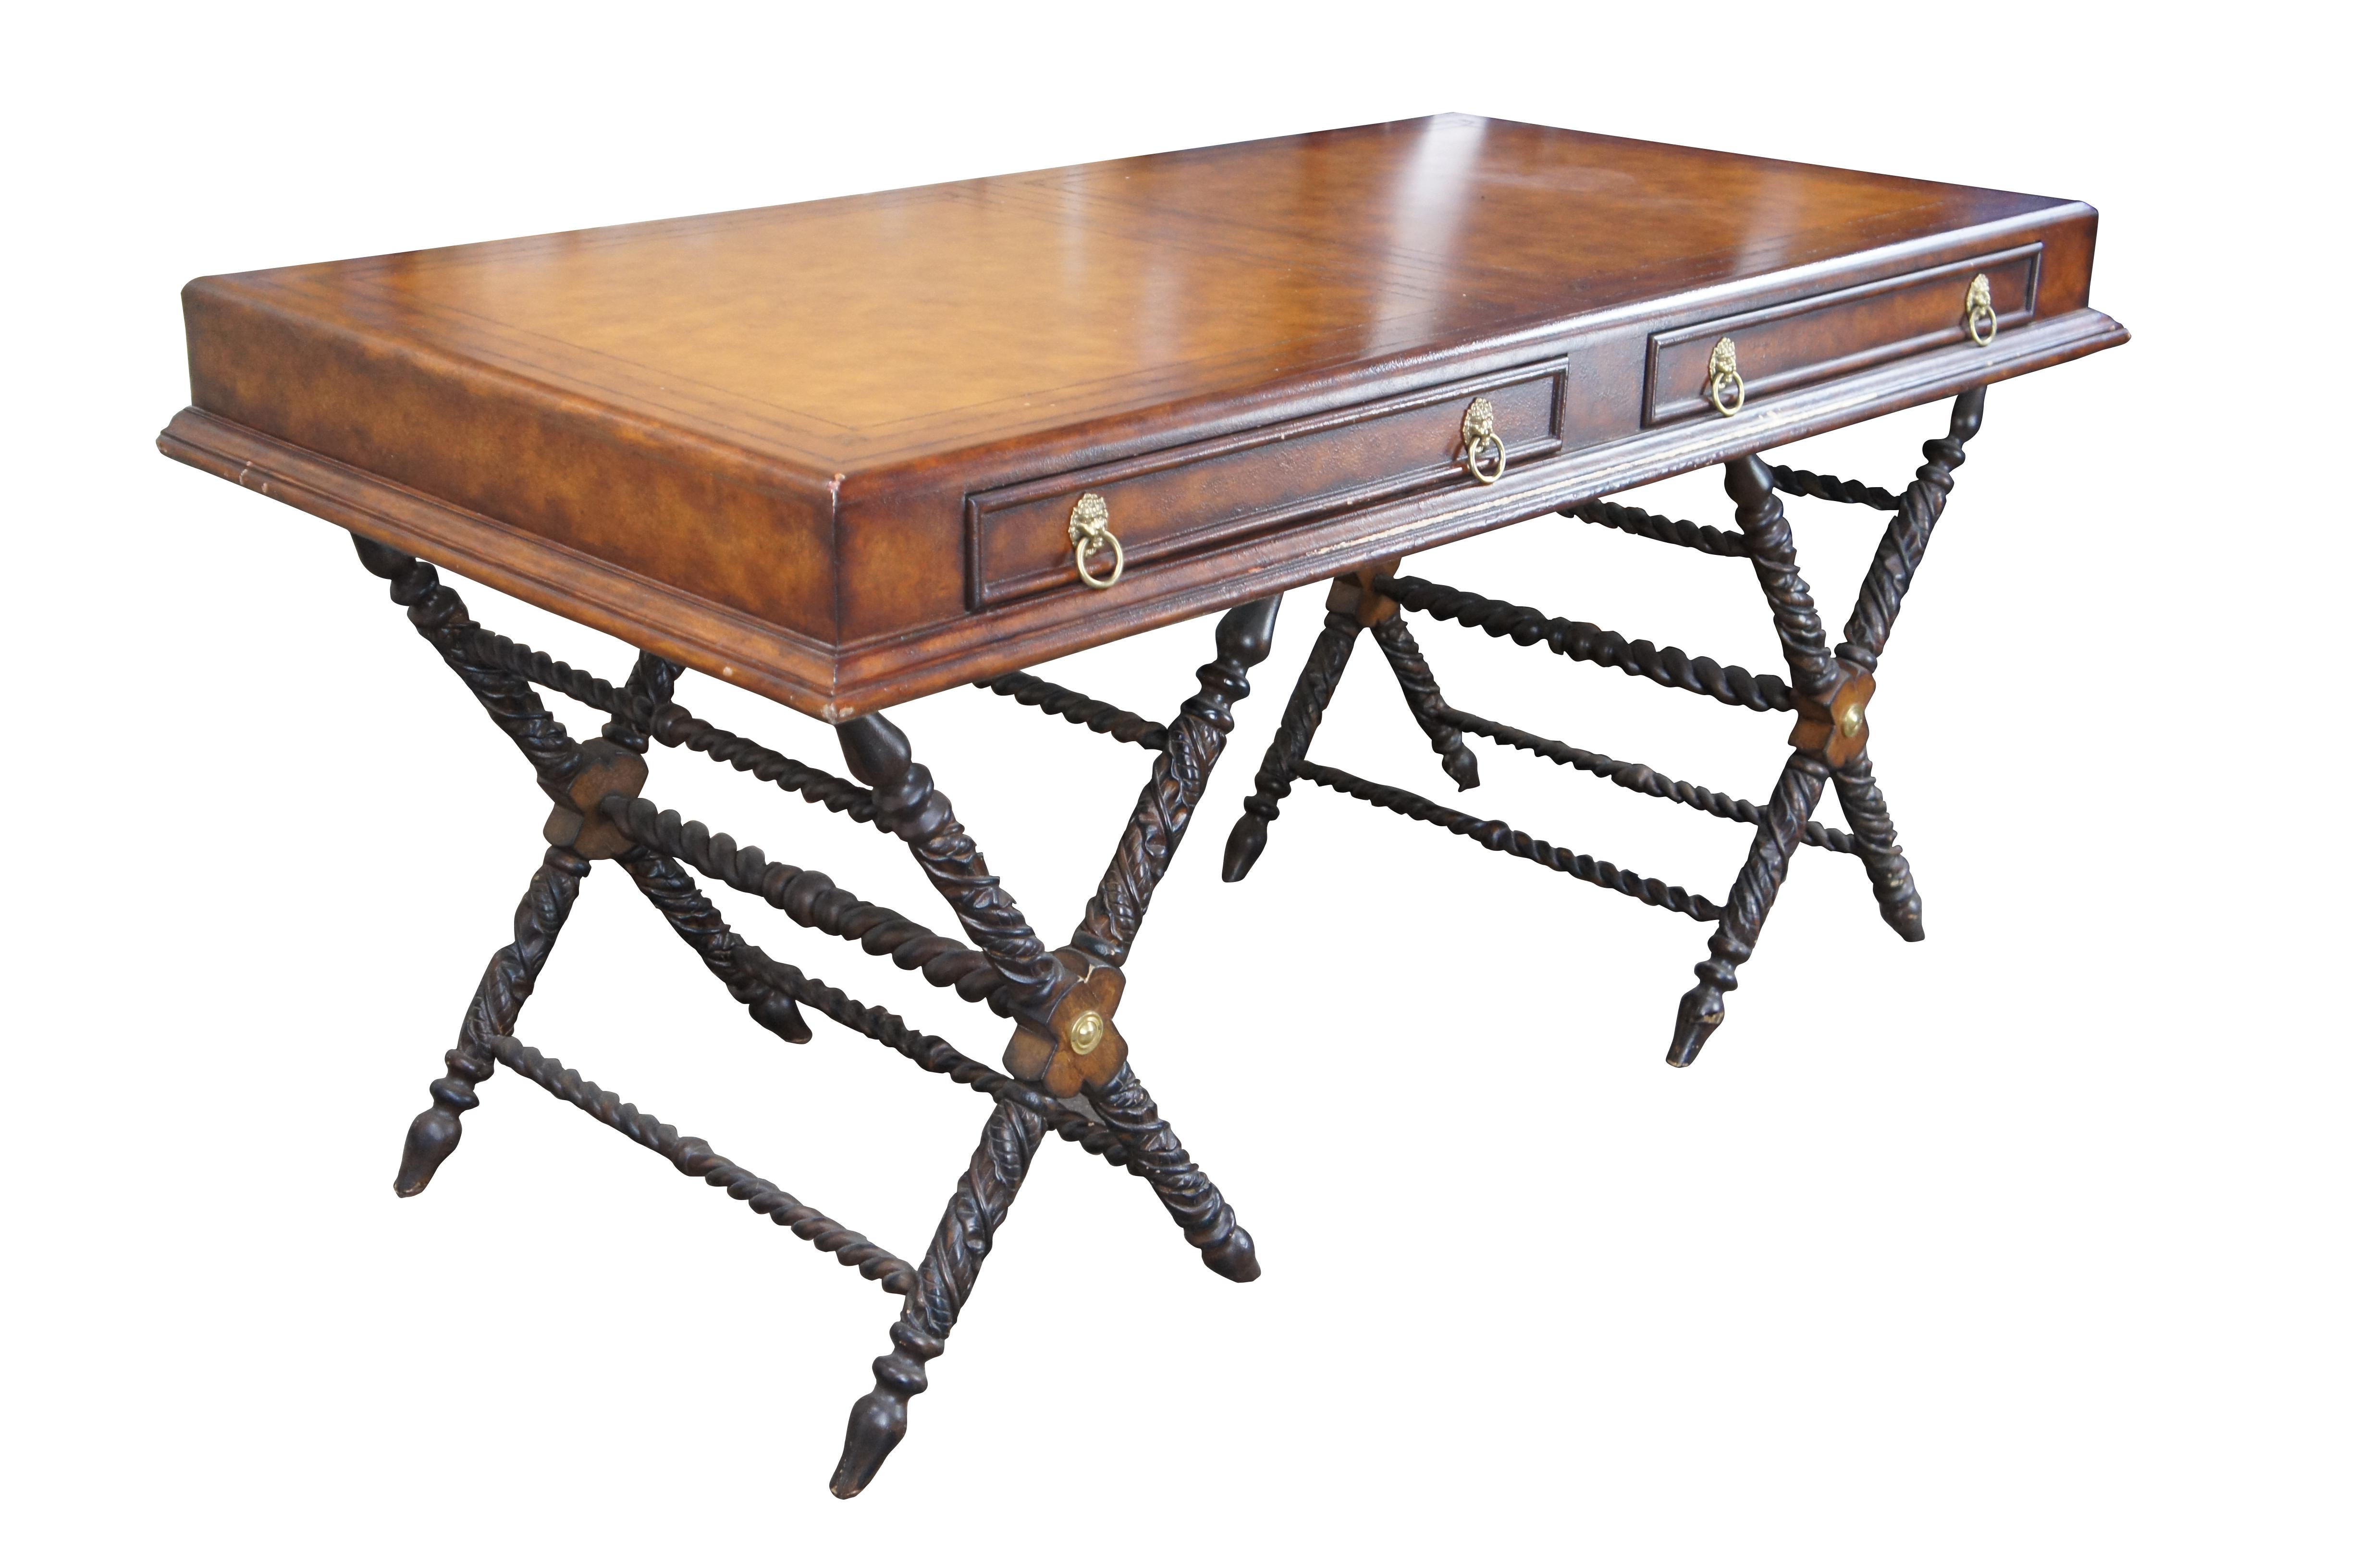 Schreibtisch im Stil der Kampagne des späten 20. Jahrhunderts. Rechteckige Form mit brauner, geprägter Lederplatte und zwei Schubladen im Fries. Jede Schublade ist mit Messing-Löwenknöpfen ausgestattet. Der Schreibtisch wird von einem geschnitzten